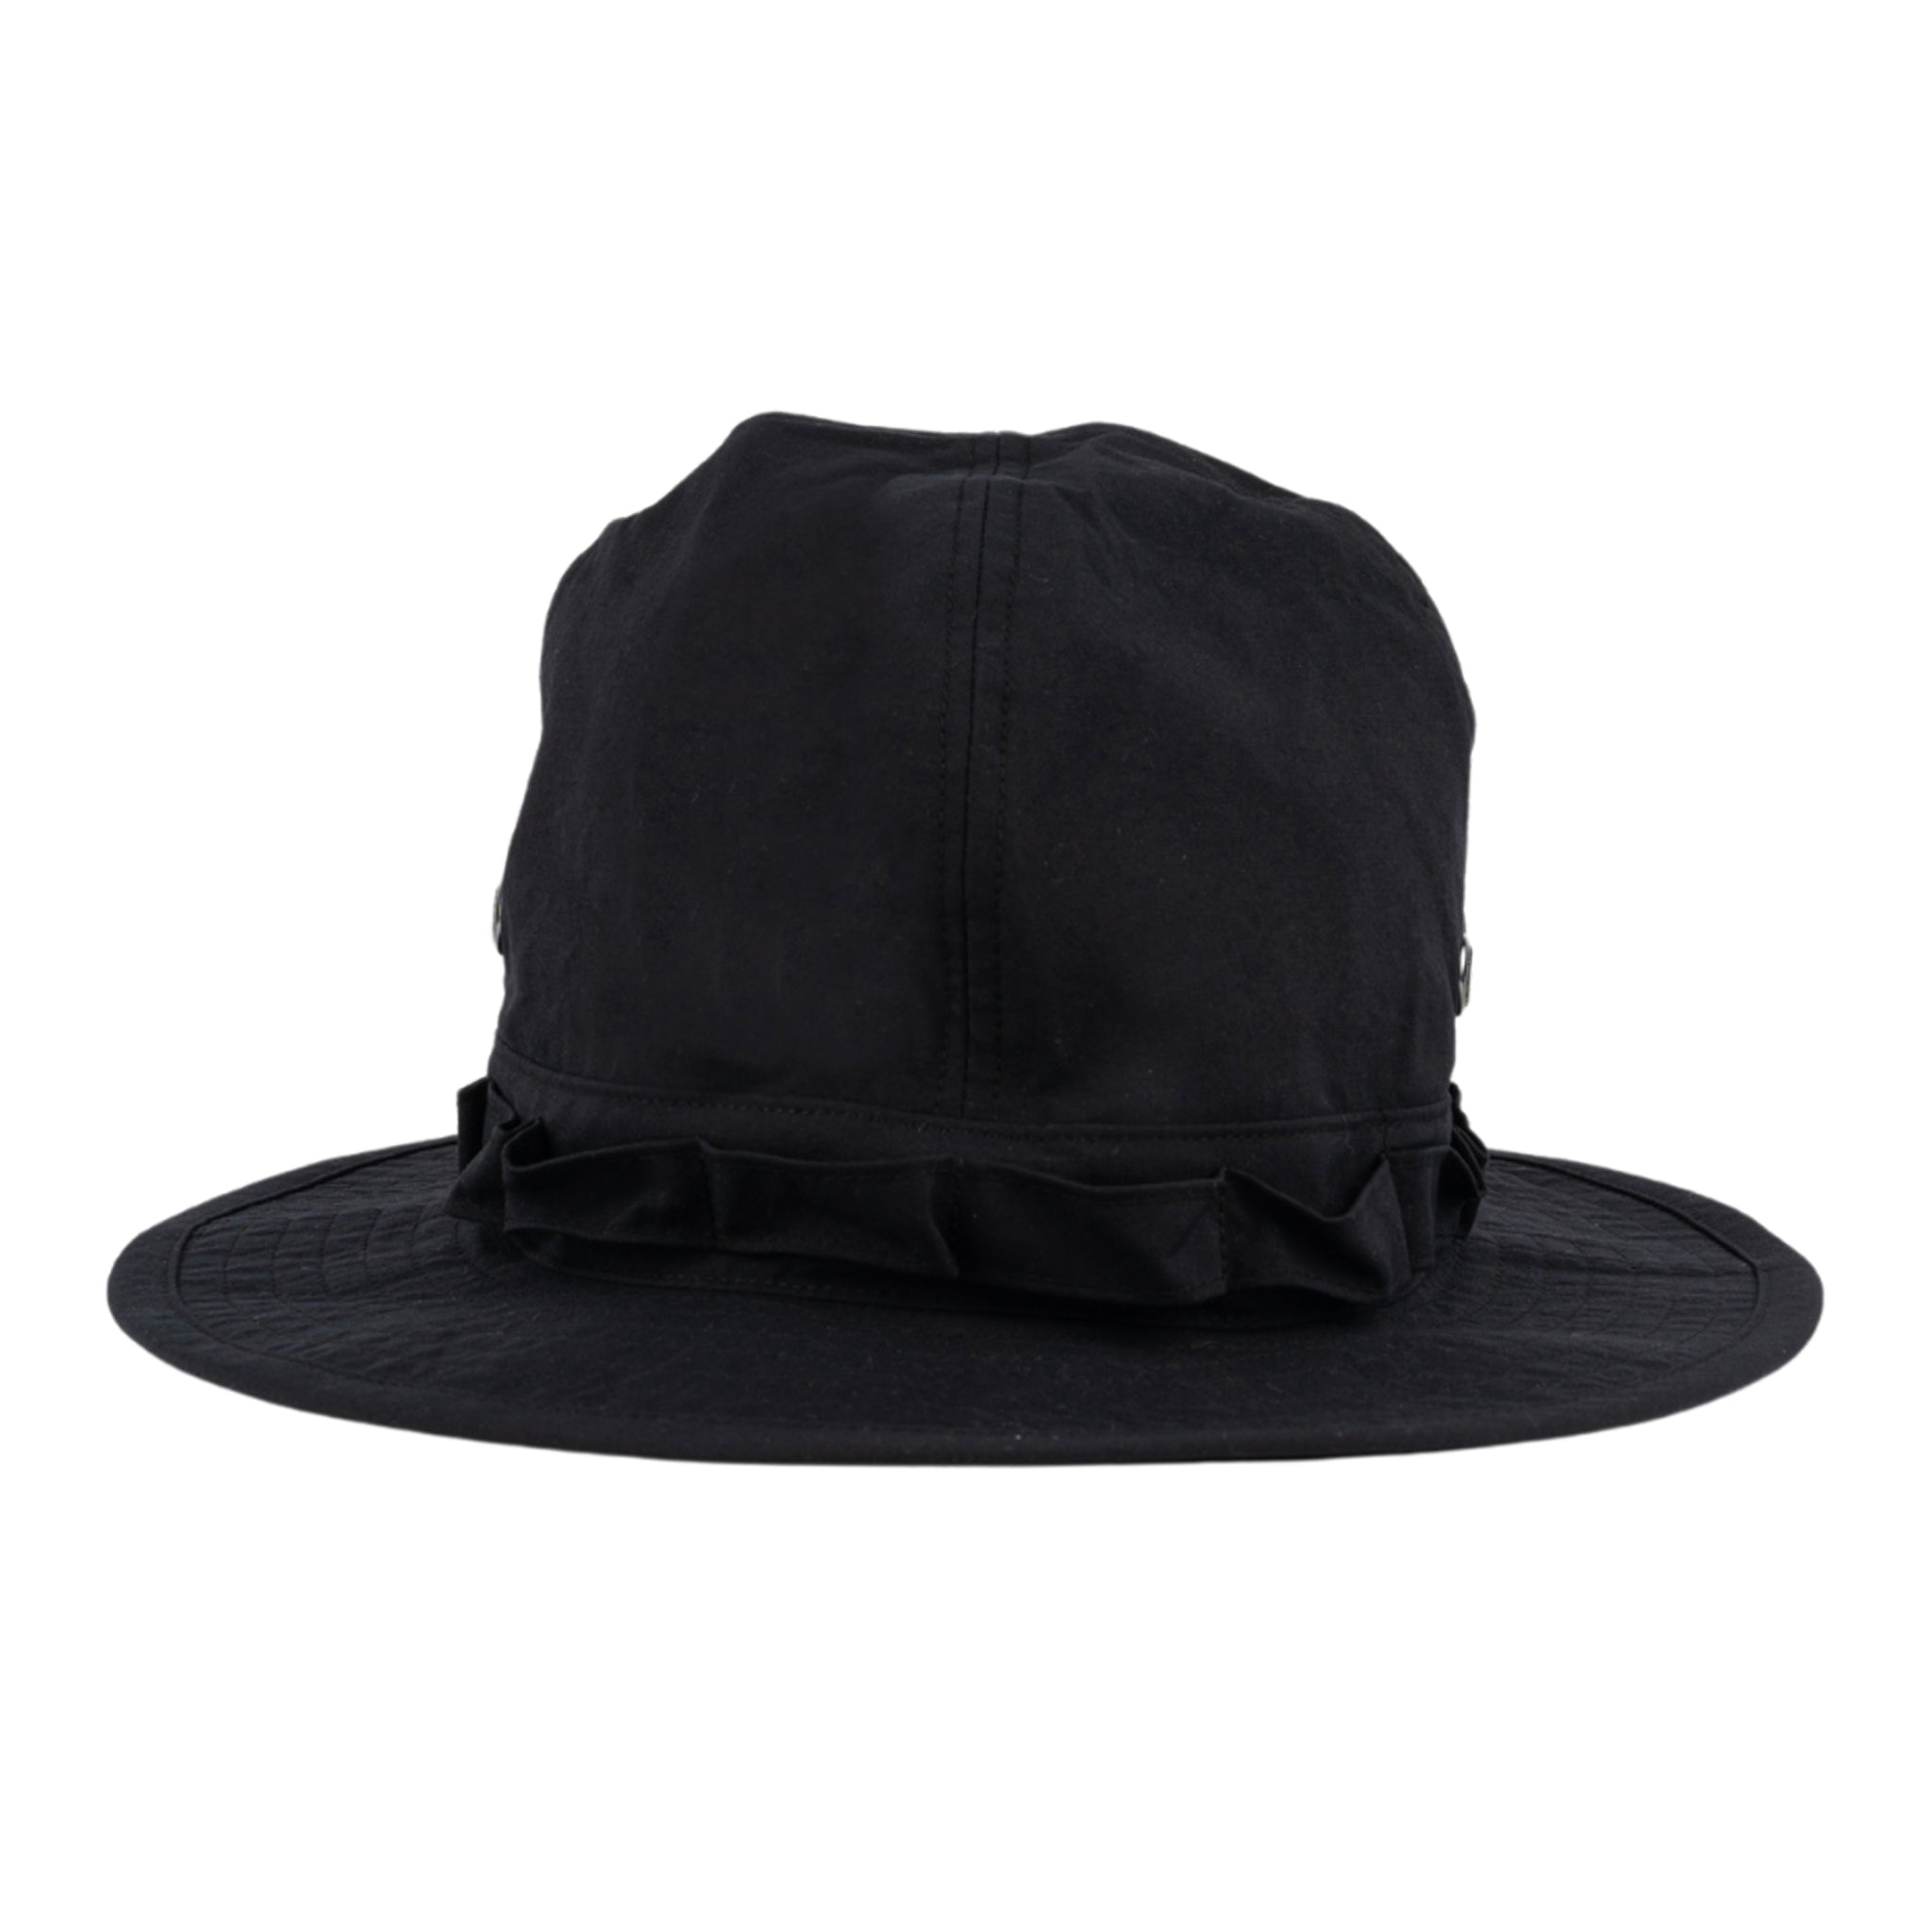 Jungle cappello in nylon in nero